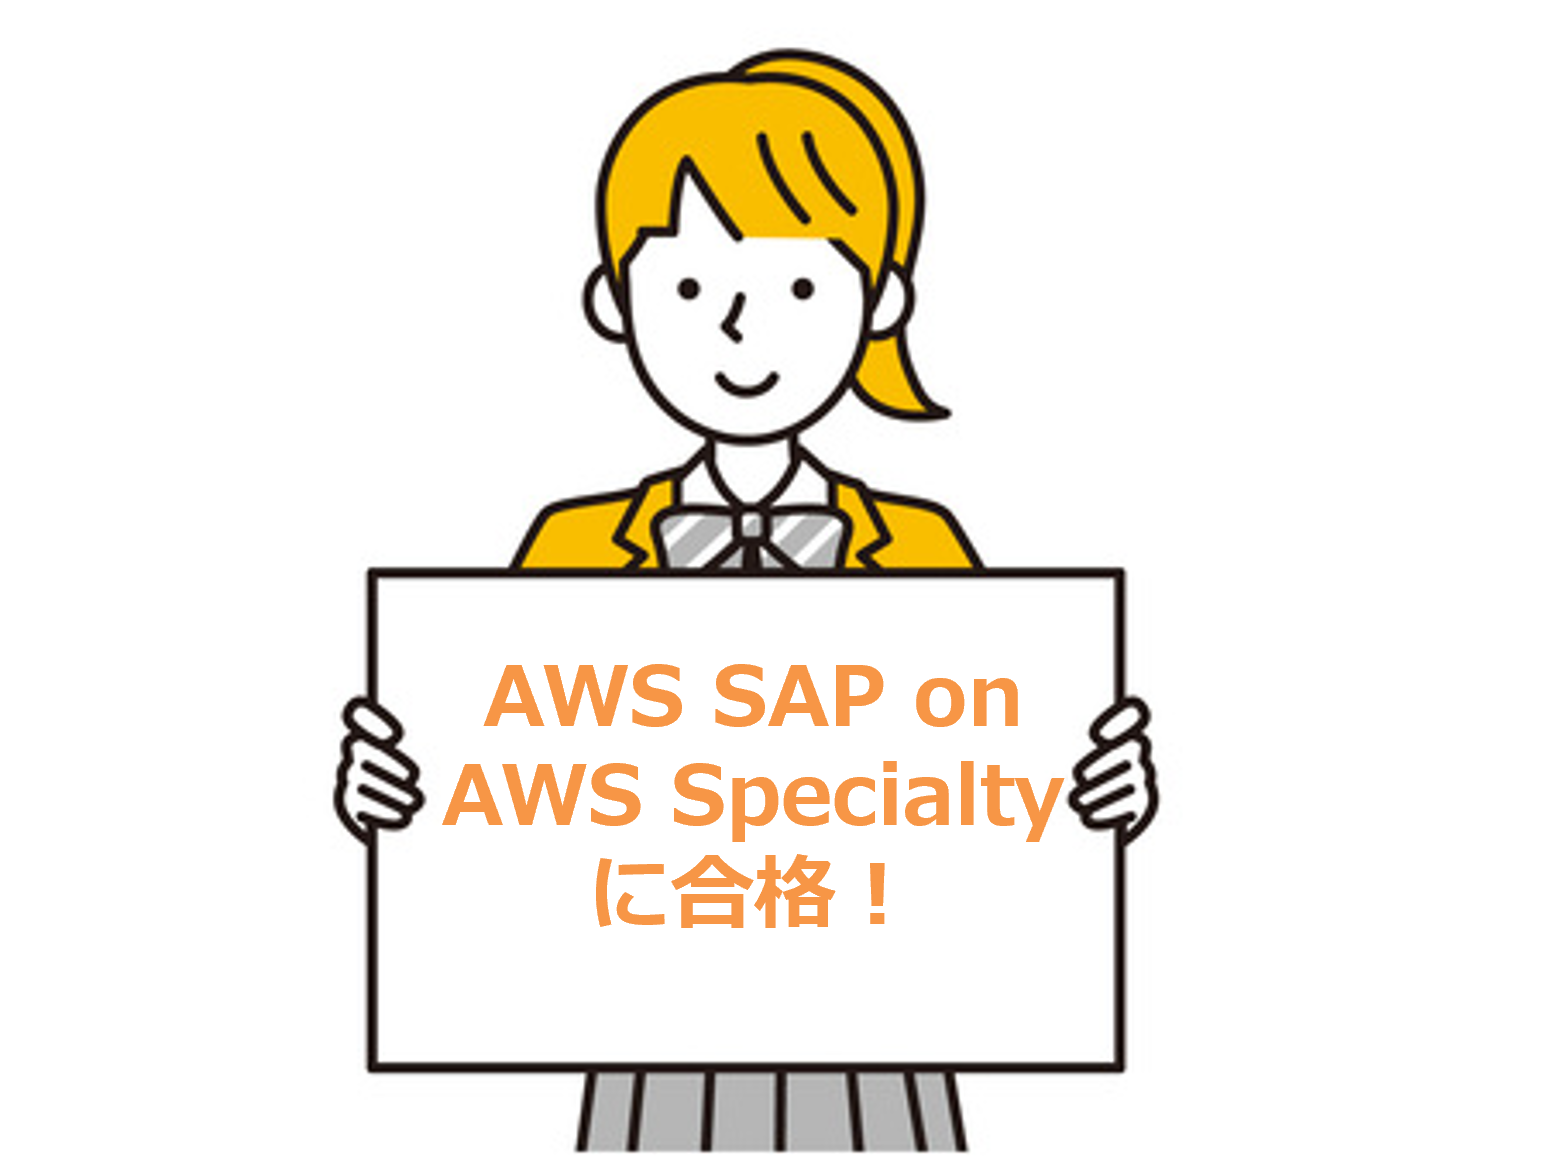 AWS SAP on AWS Specialty